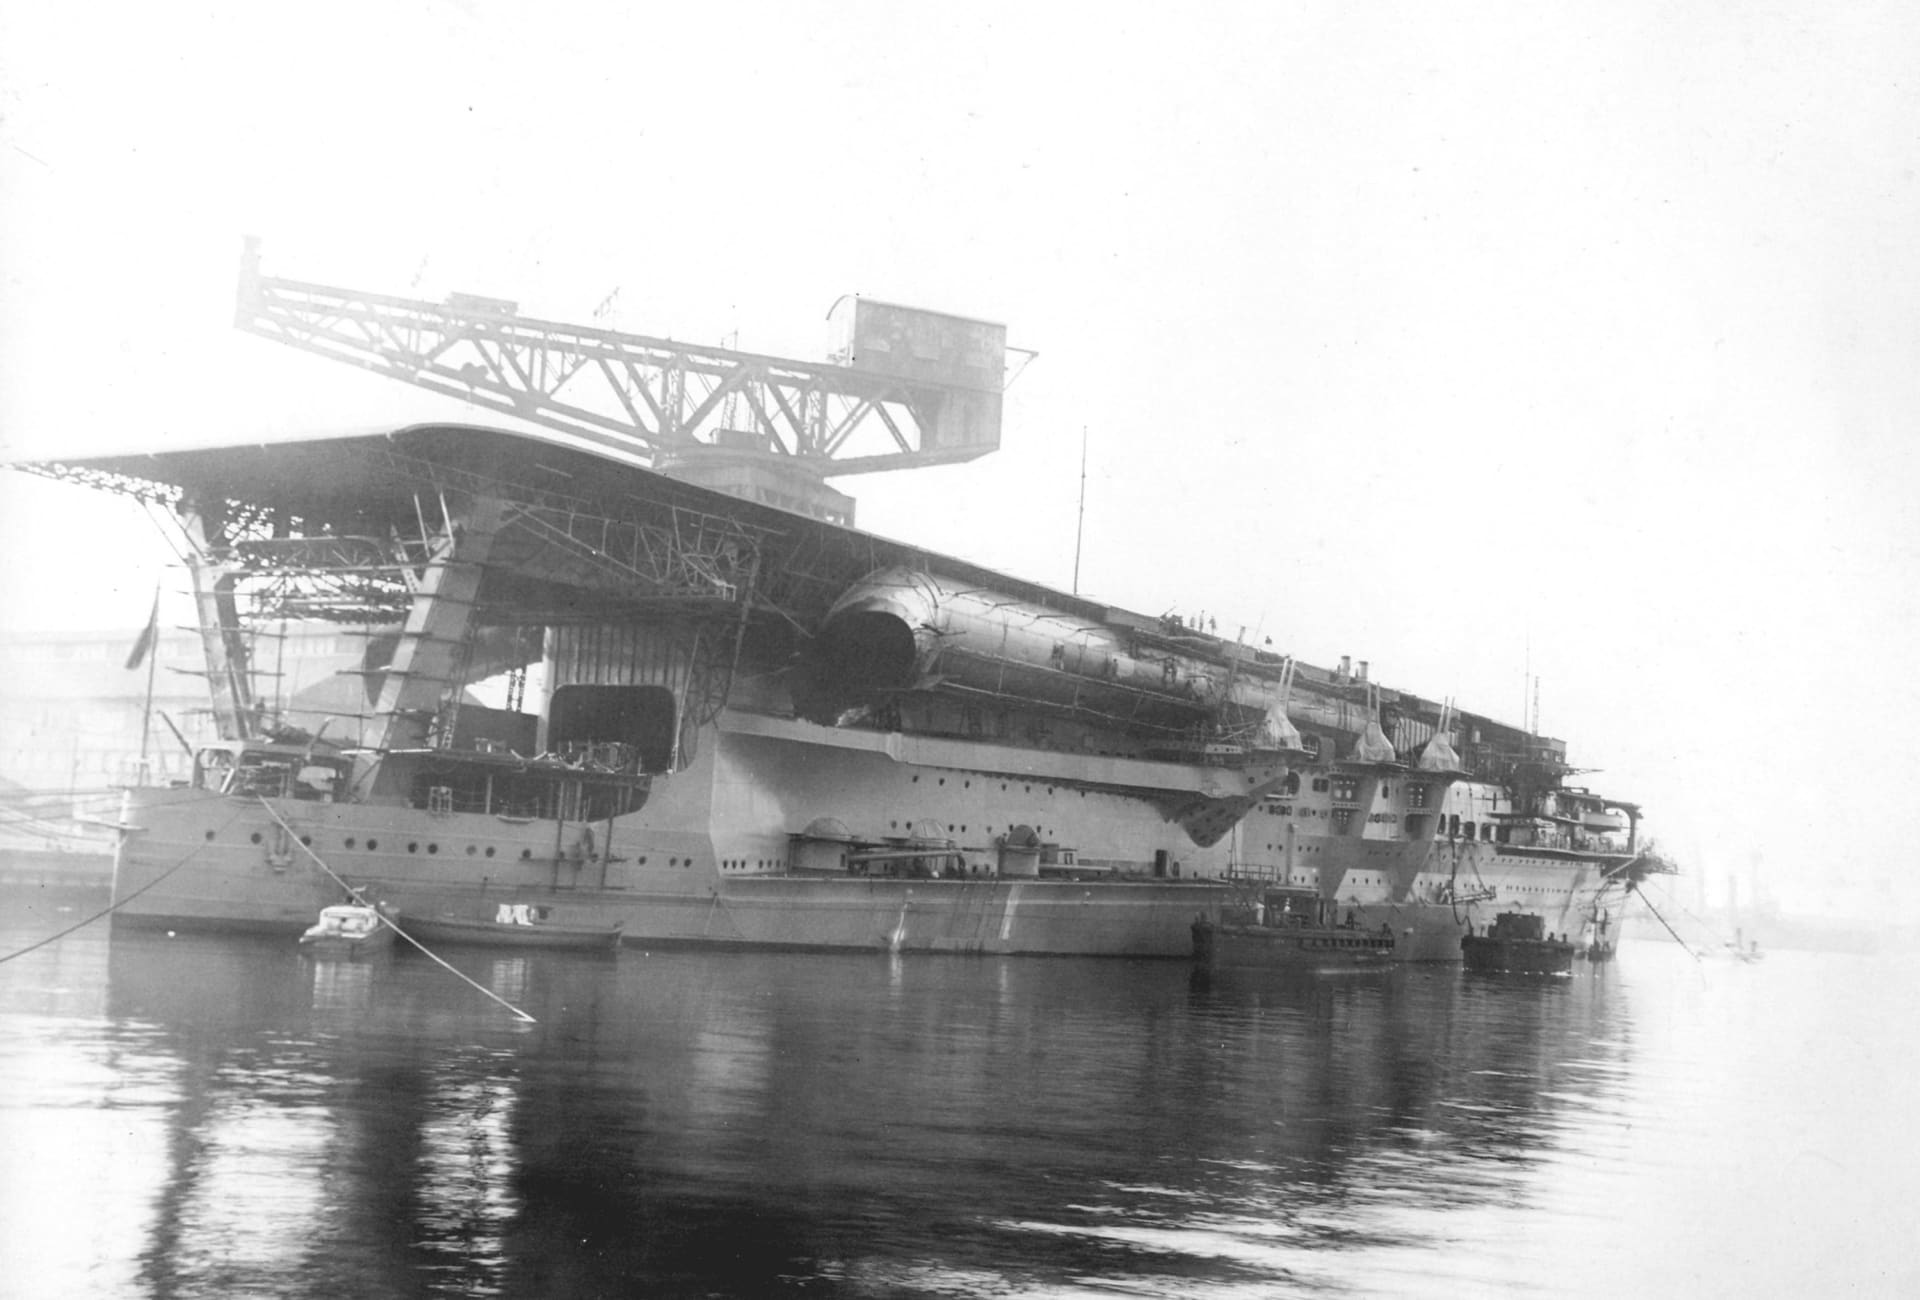 Kaga byla druhou letadlovou lodí, kterou Japonsko postavilo